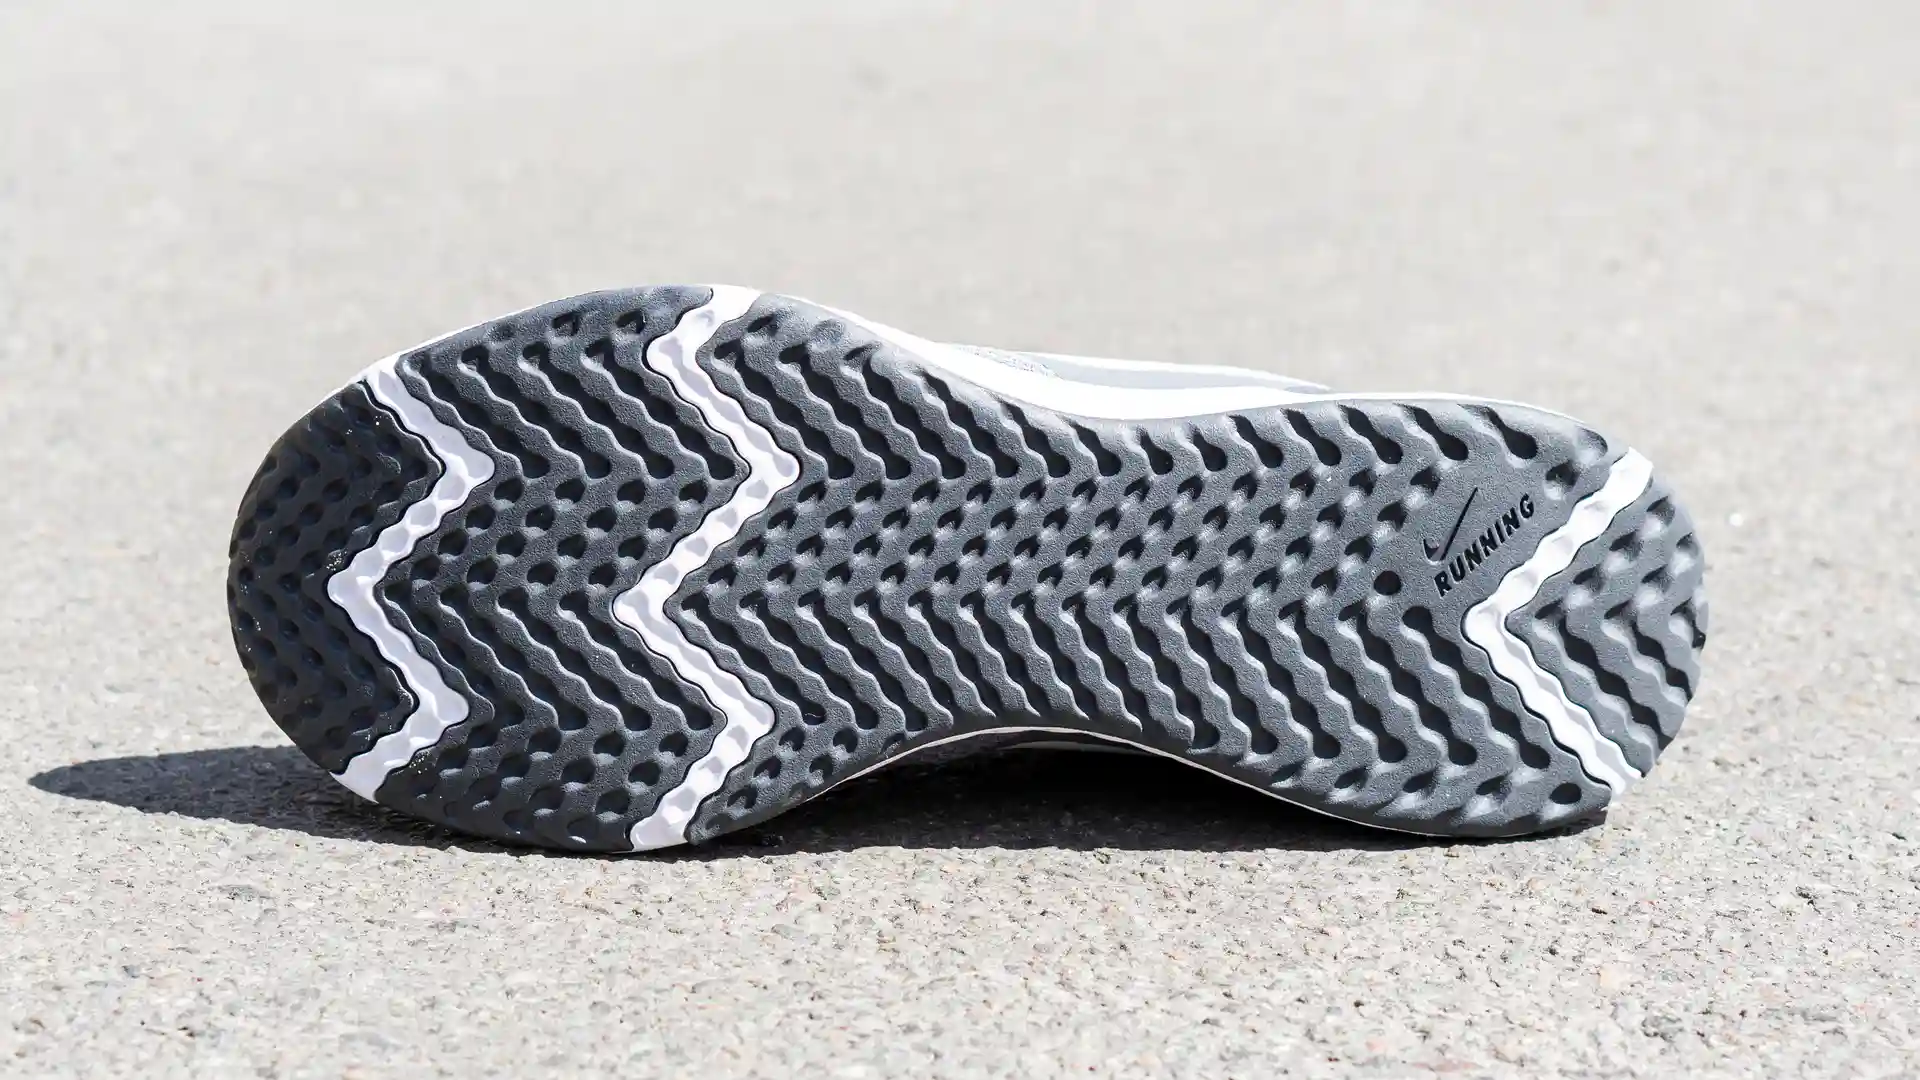 Solado de um tênis Nike Revolution 5 como destaque da imagem